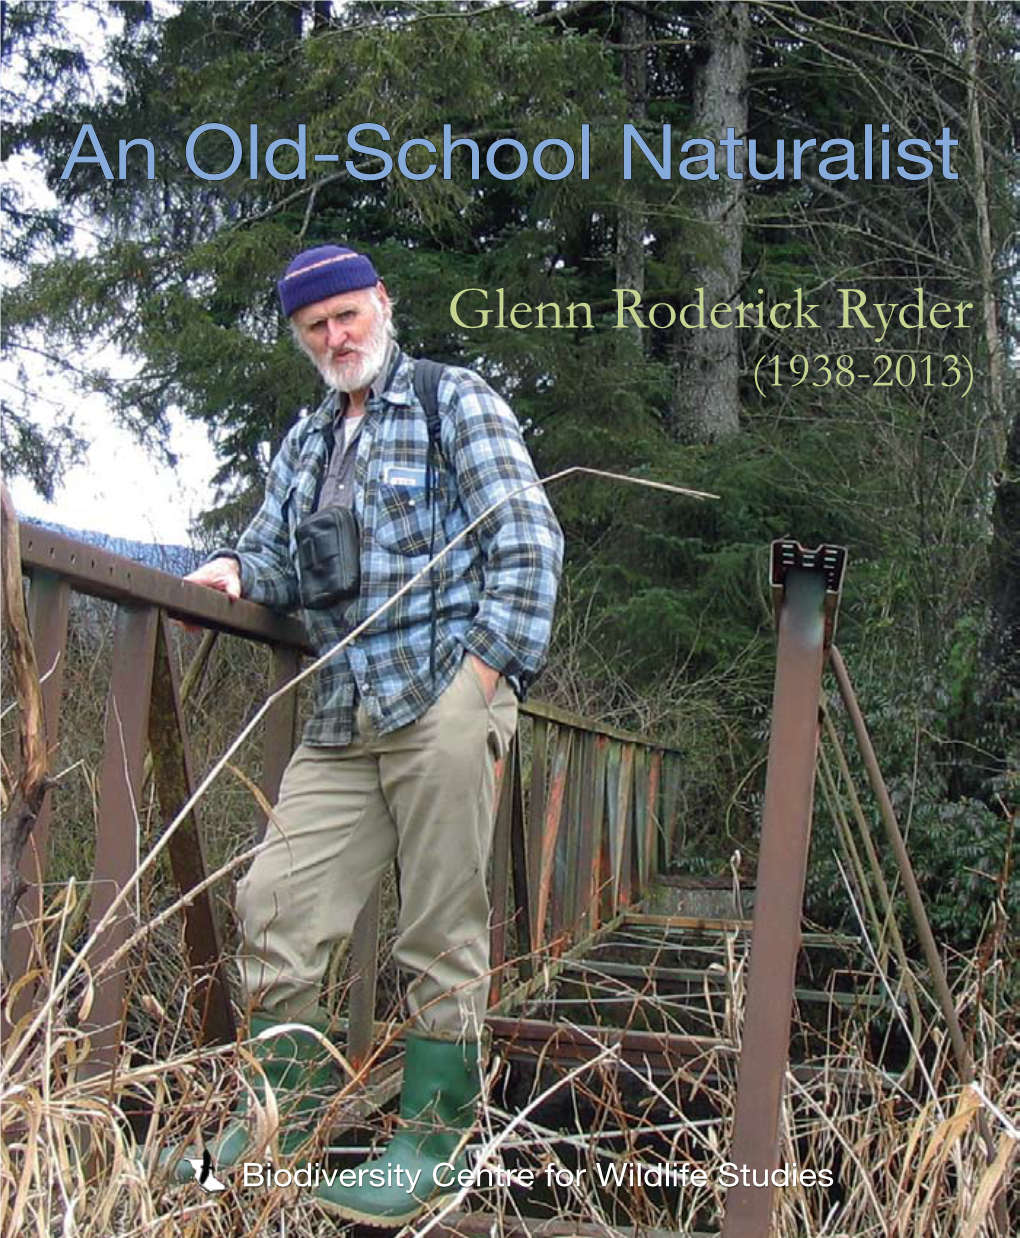 An Old-School Naturalist, Glenn Roderick Ryder